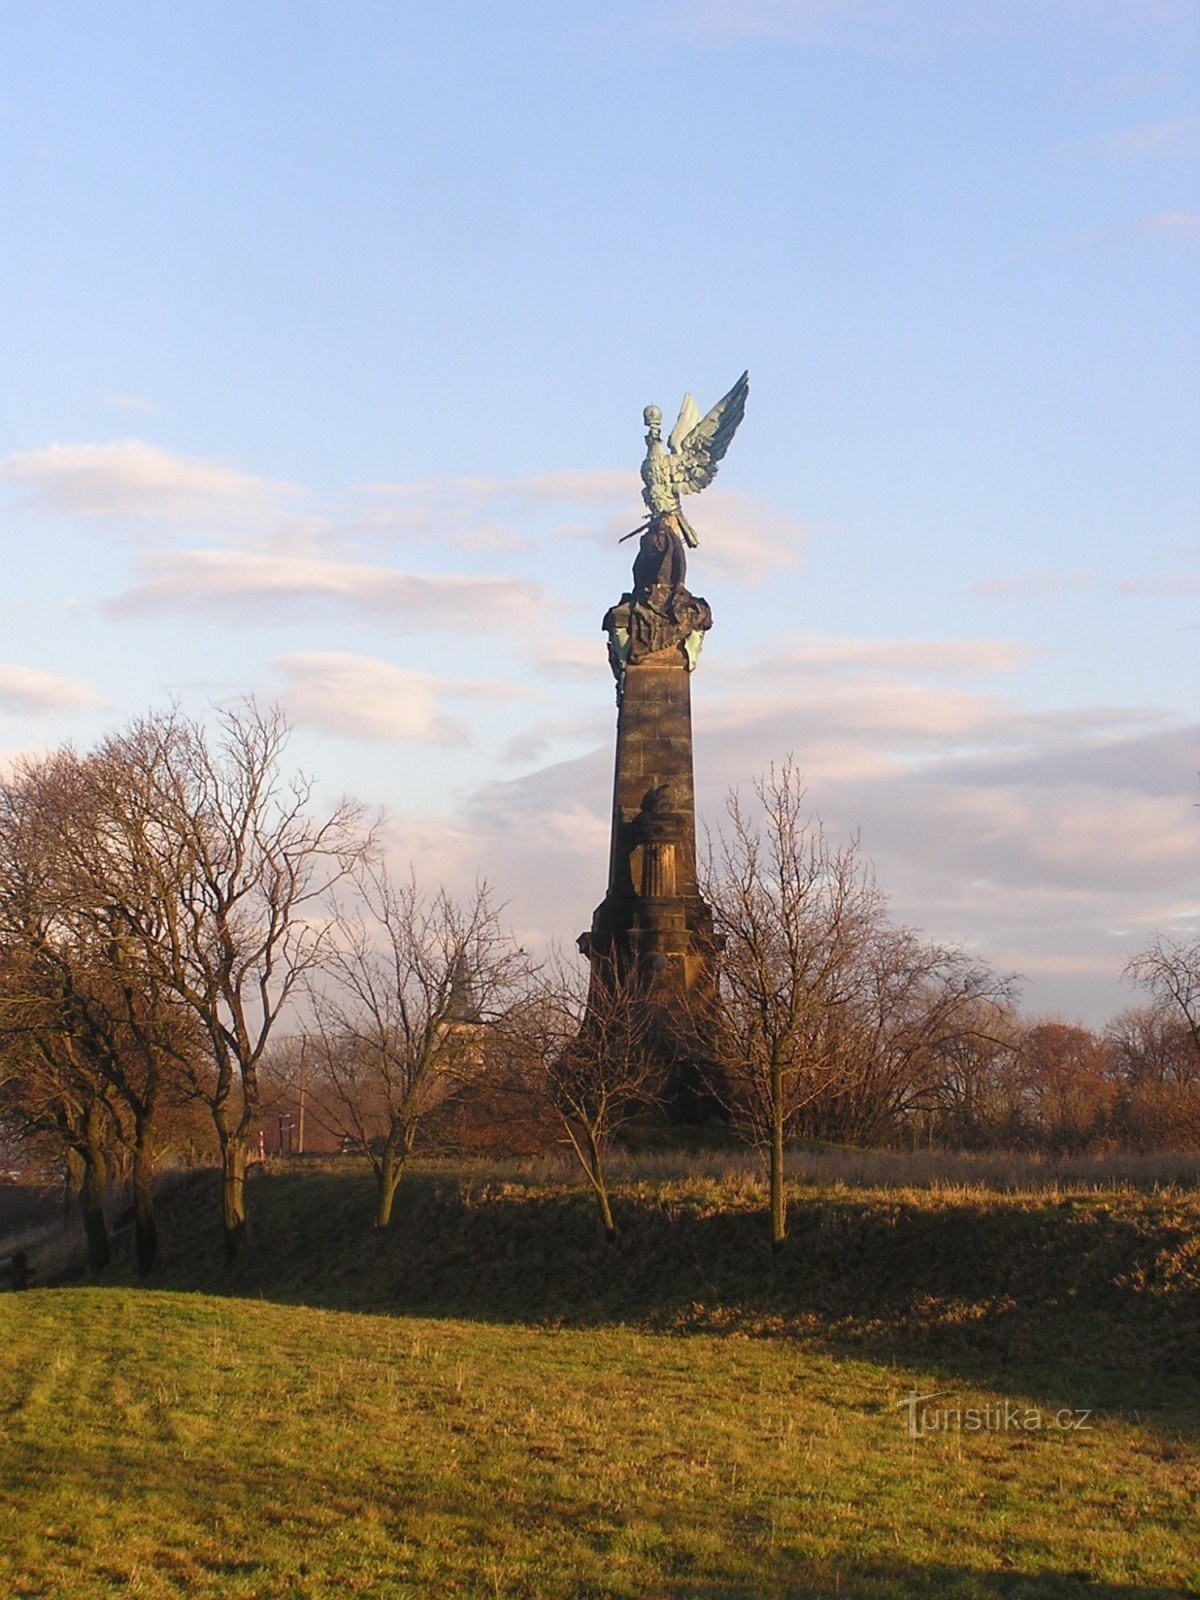 Đài tưởng niệm trận Kolín - 4.12.2007 tháng XNUMX năm XNUMX